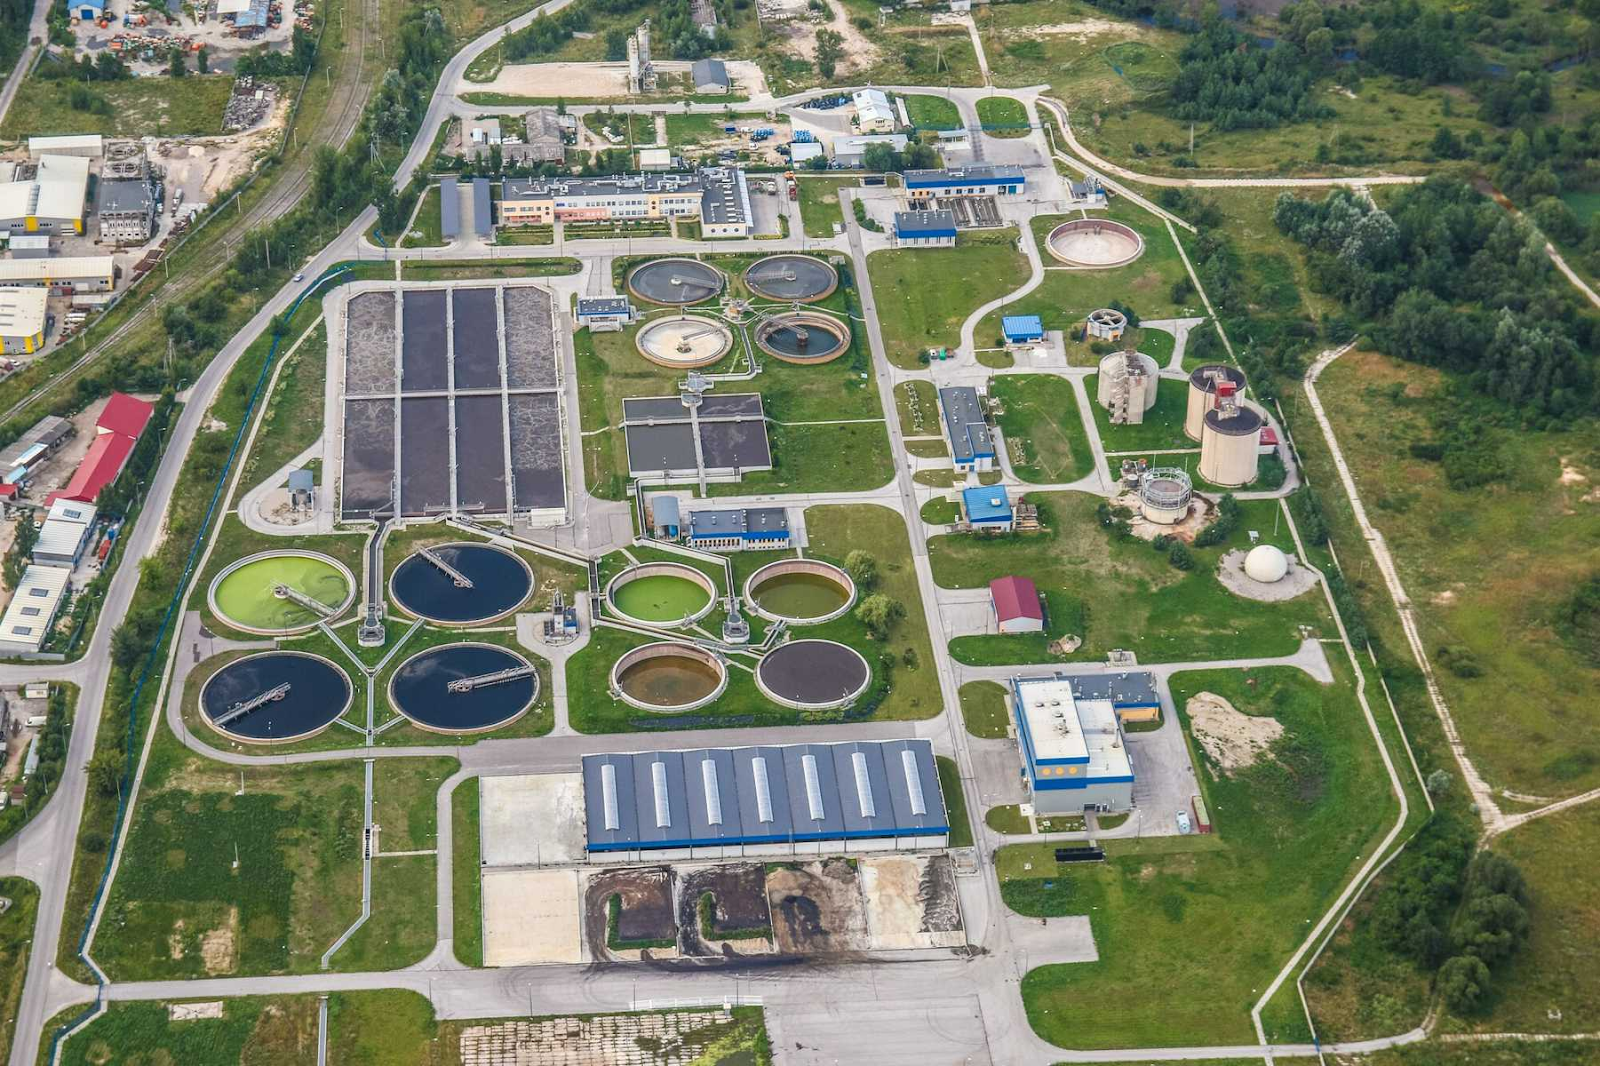 Optimice su instalación de aguas residuales para maximizar la capacidad de tratamiento